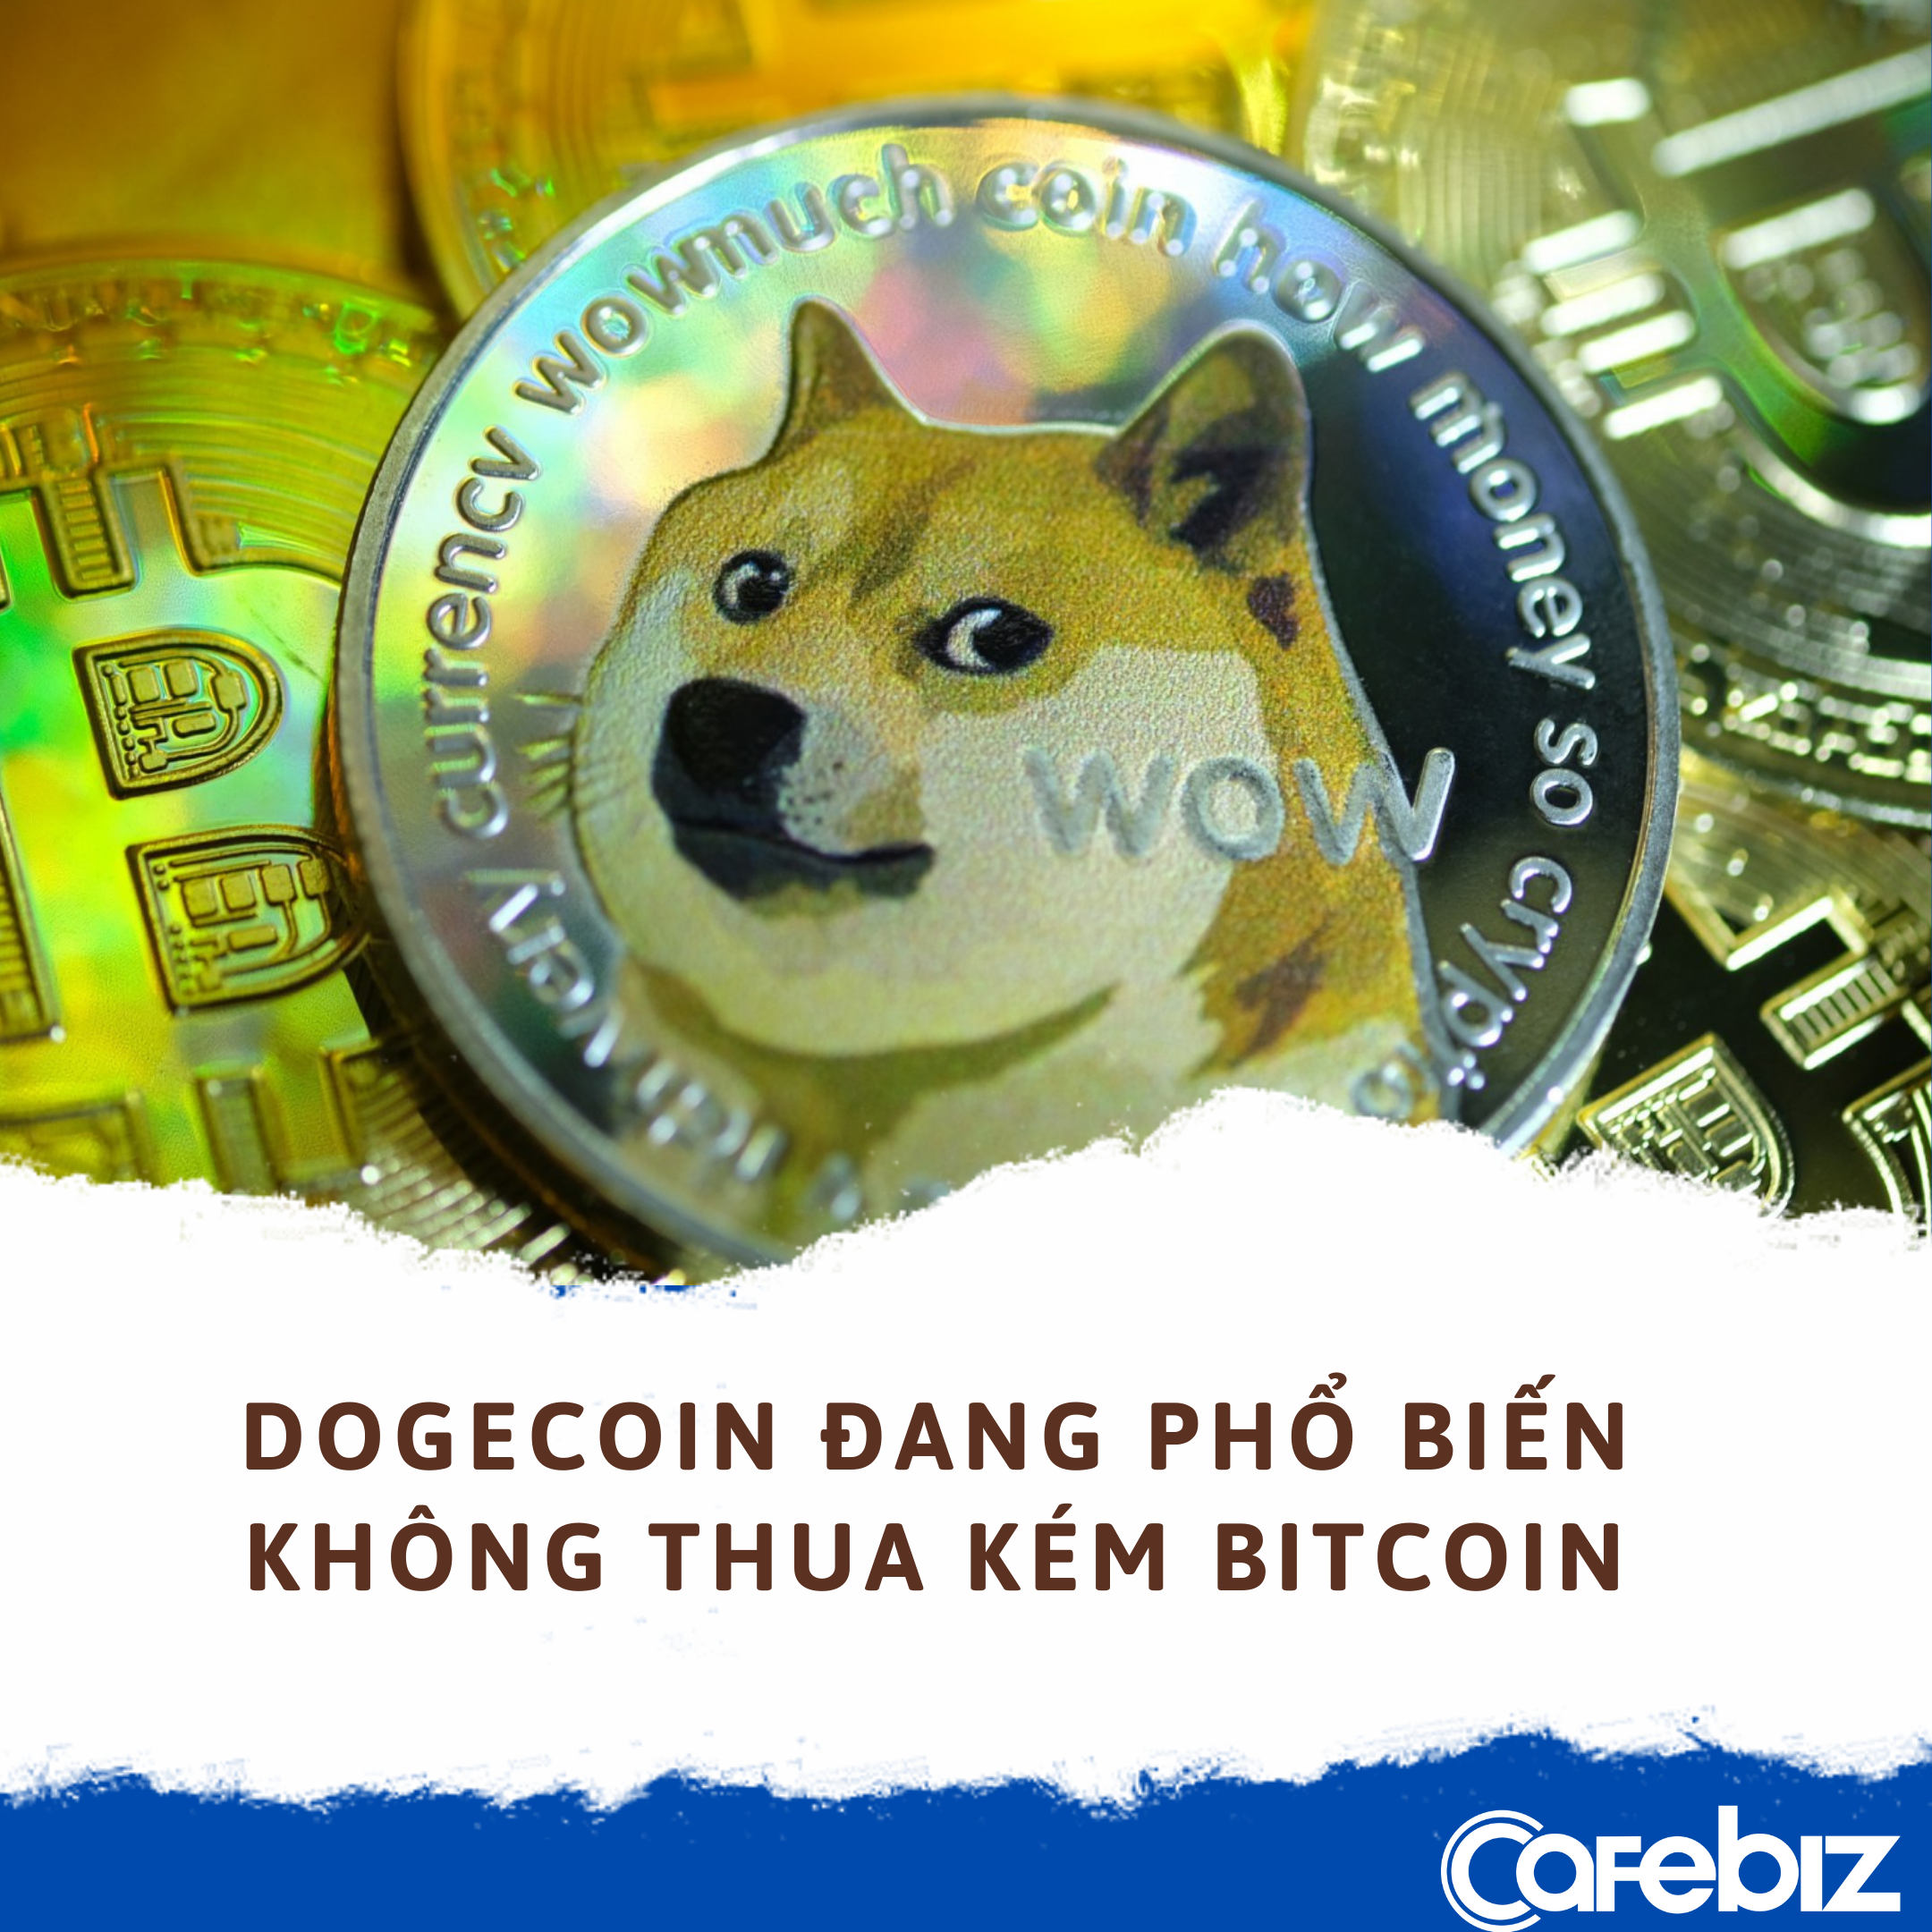 Twitter đổi logo thành Dogecoin, giá DOGE “dựng cột”